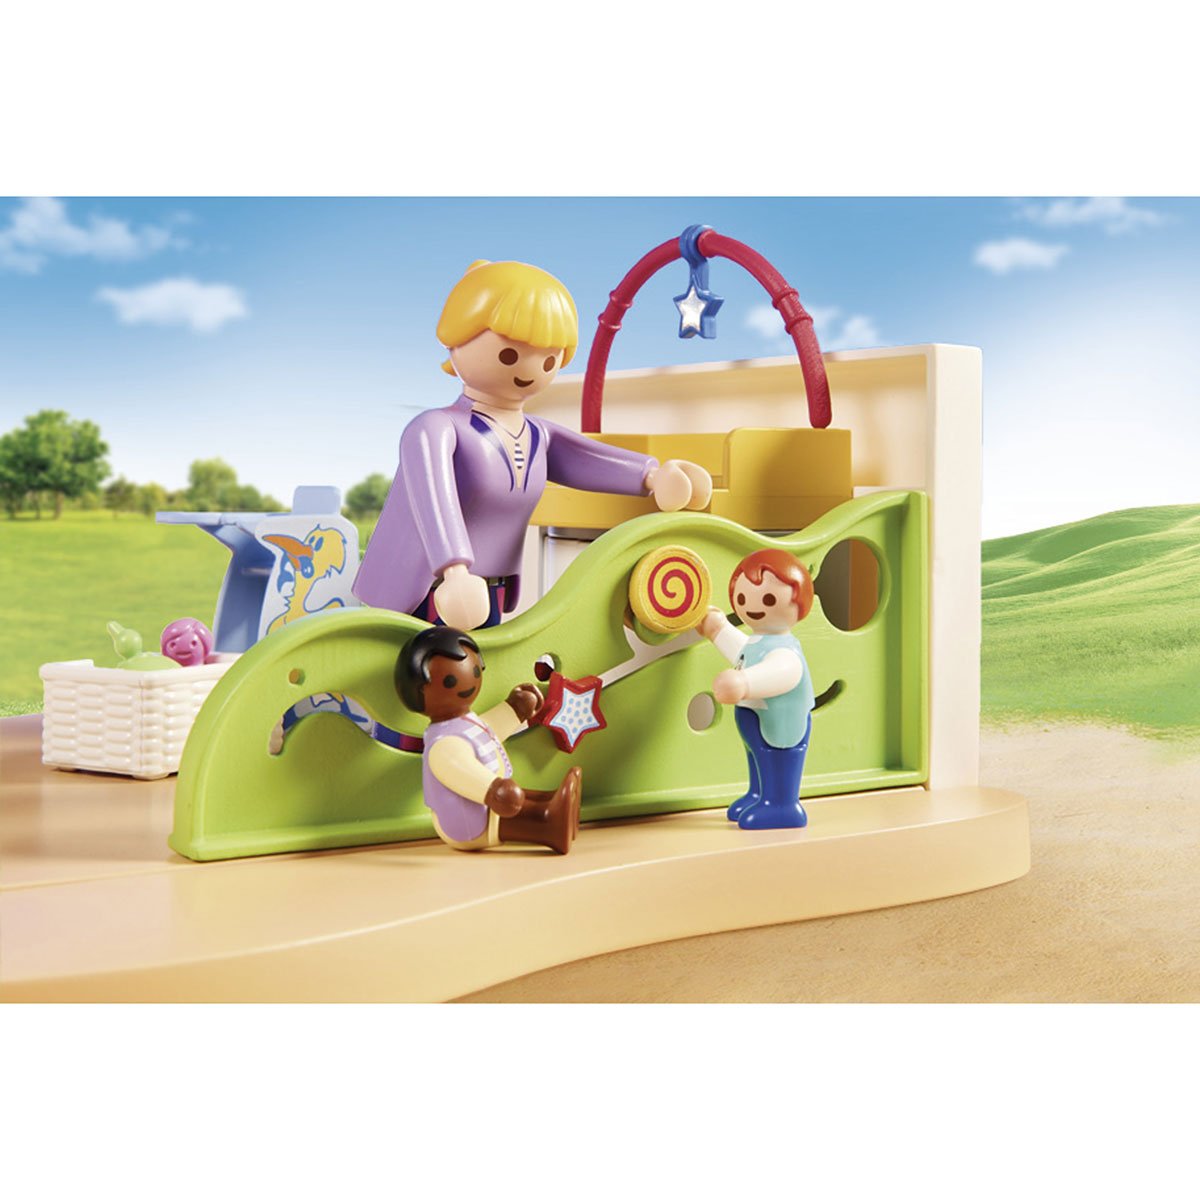 Espace crèche pour bébés Playmobil City Life 70282 - La Grande Récré